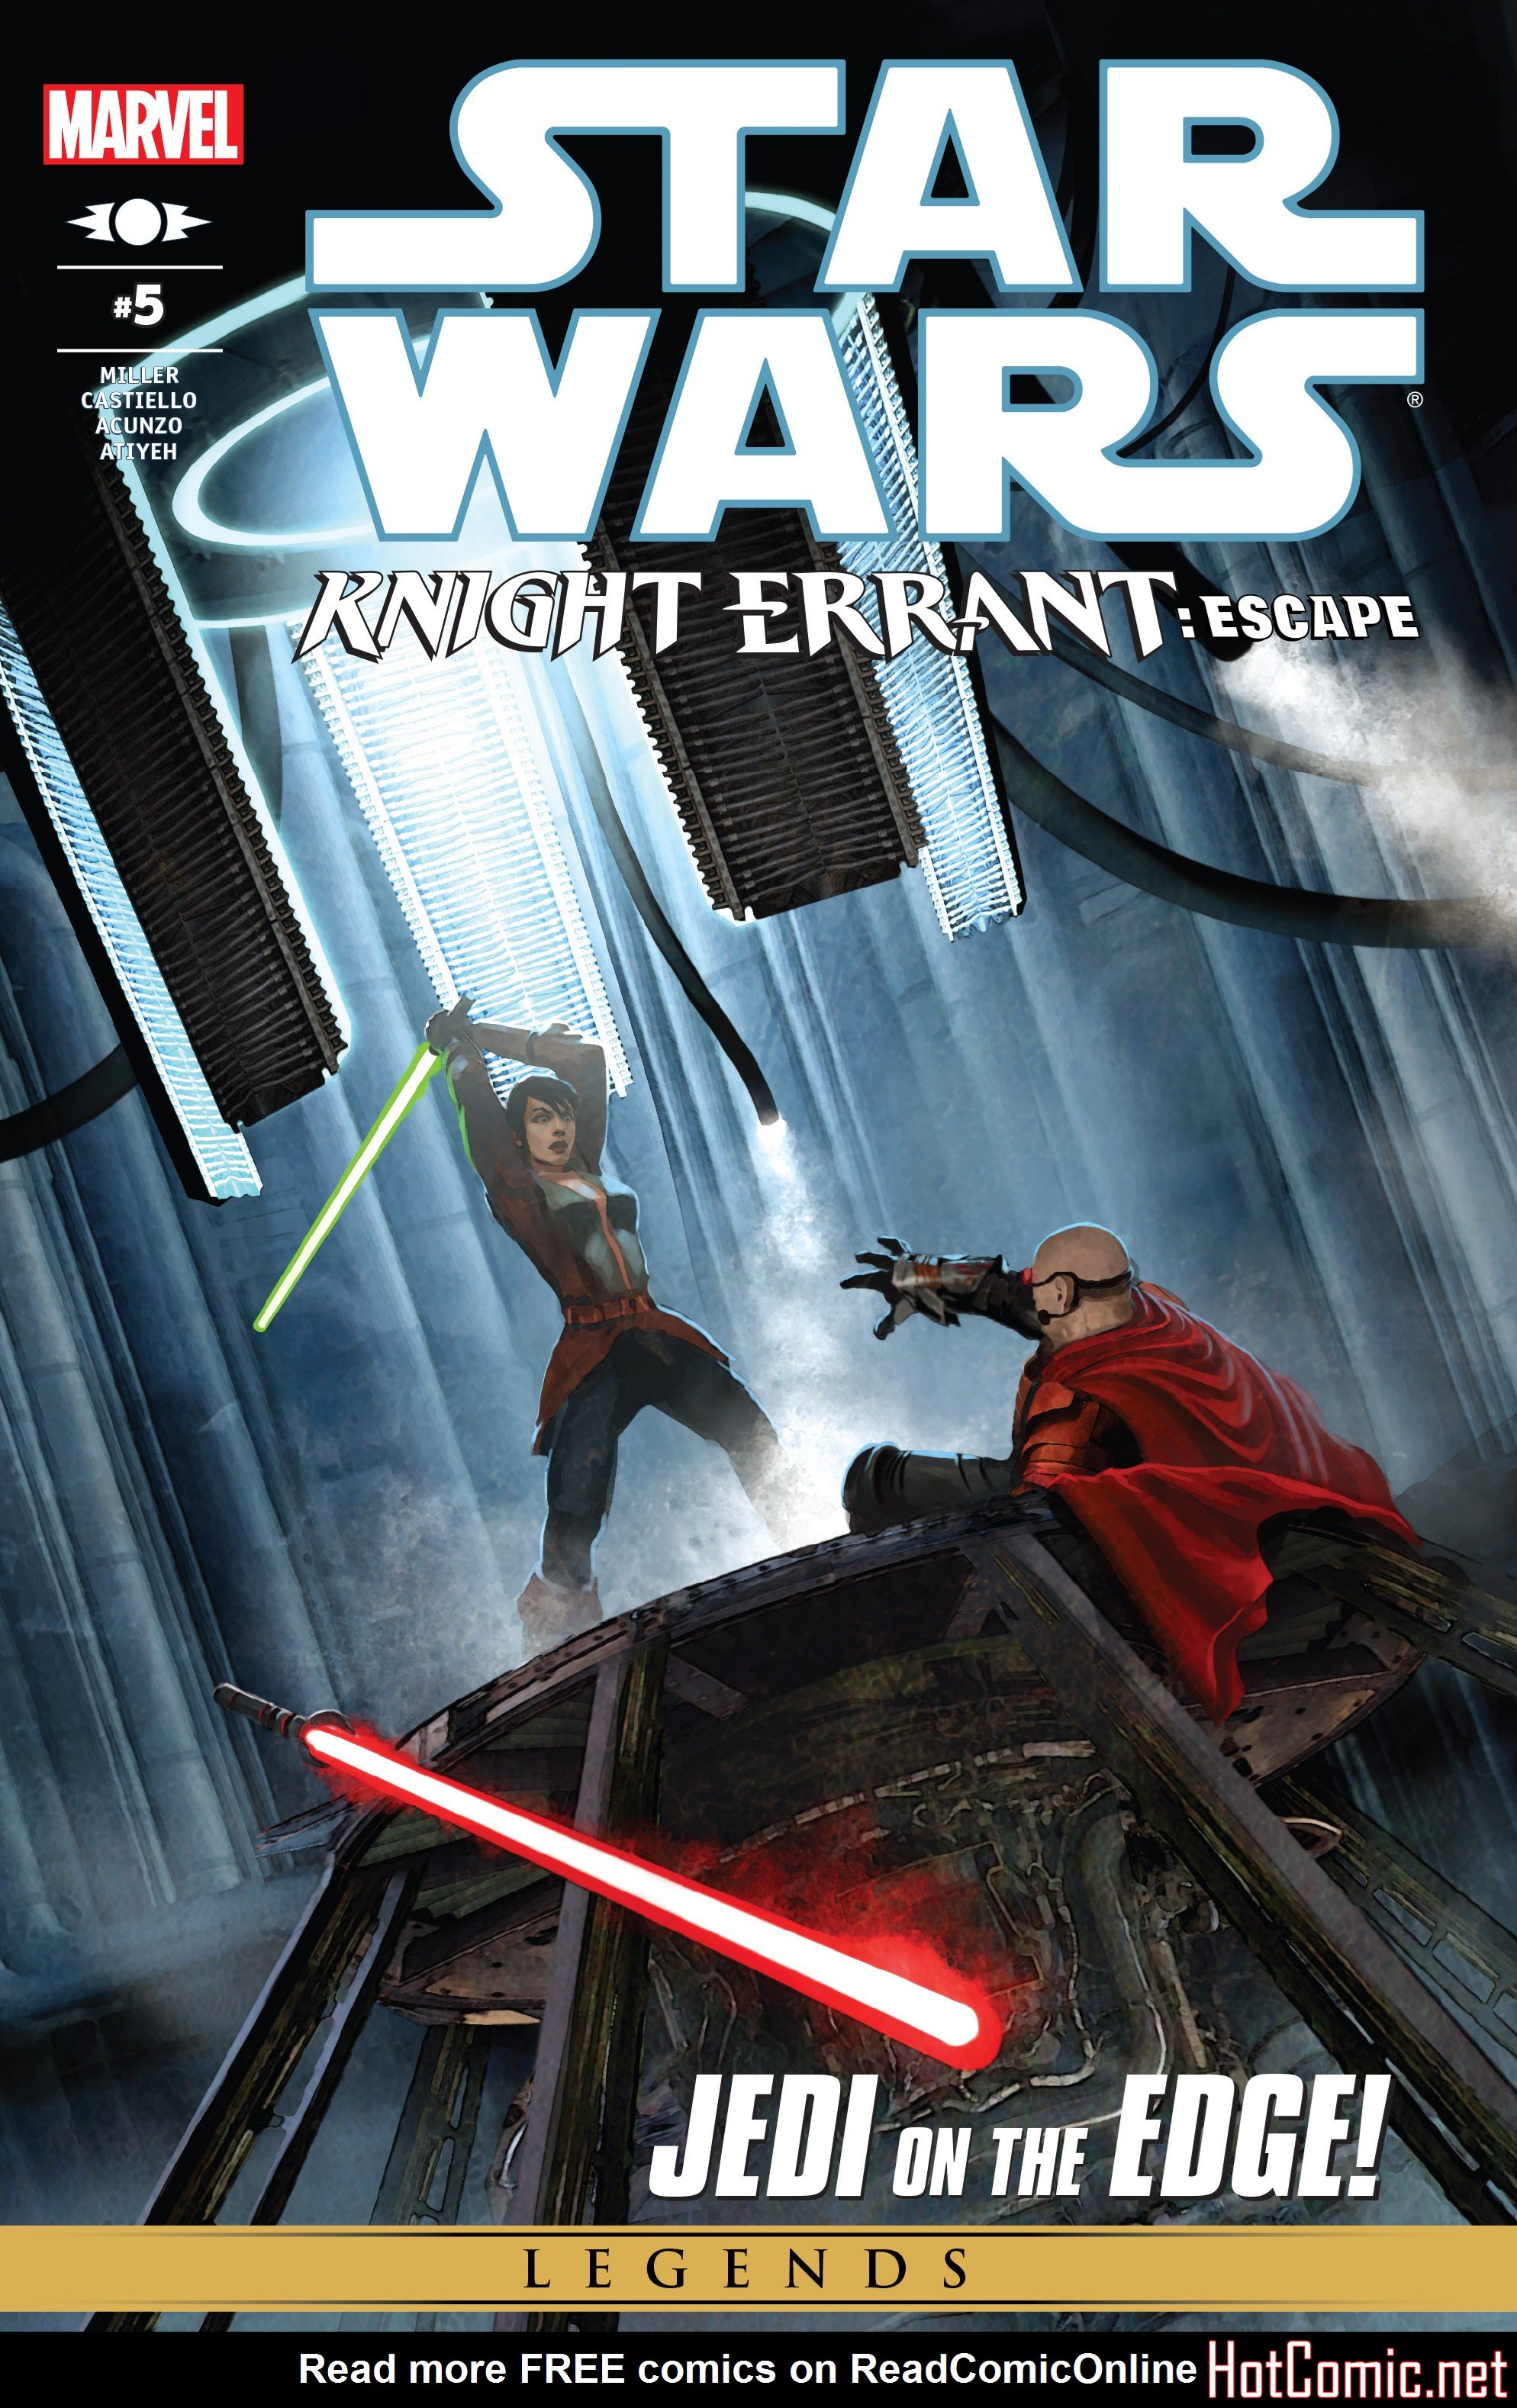 Star Wars: Knight Errant - Escape